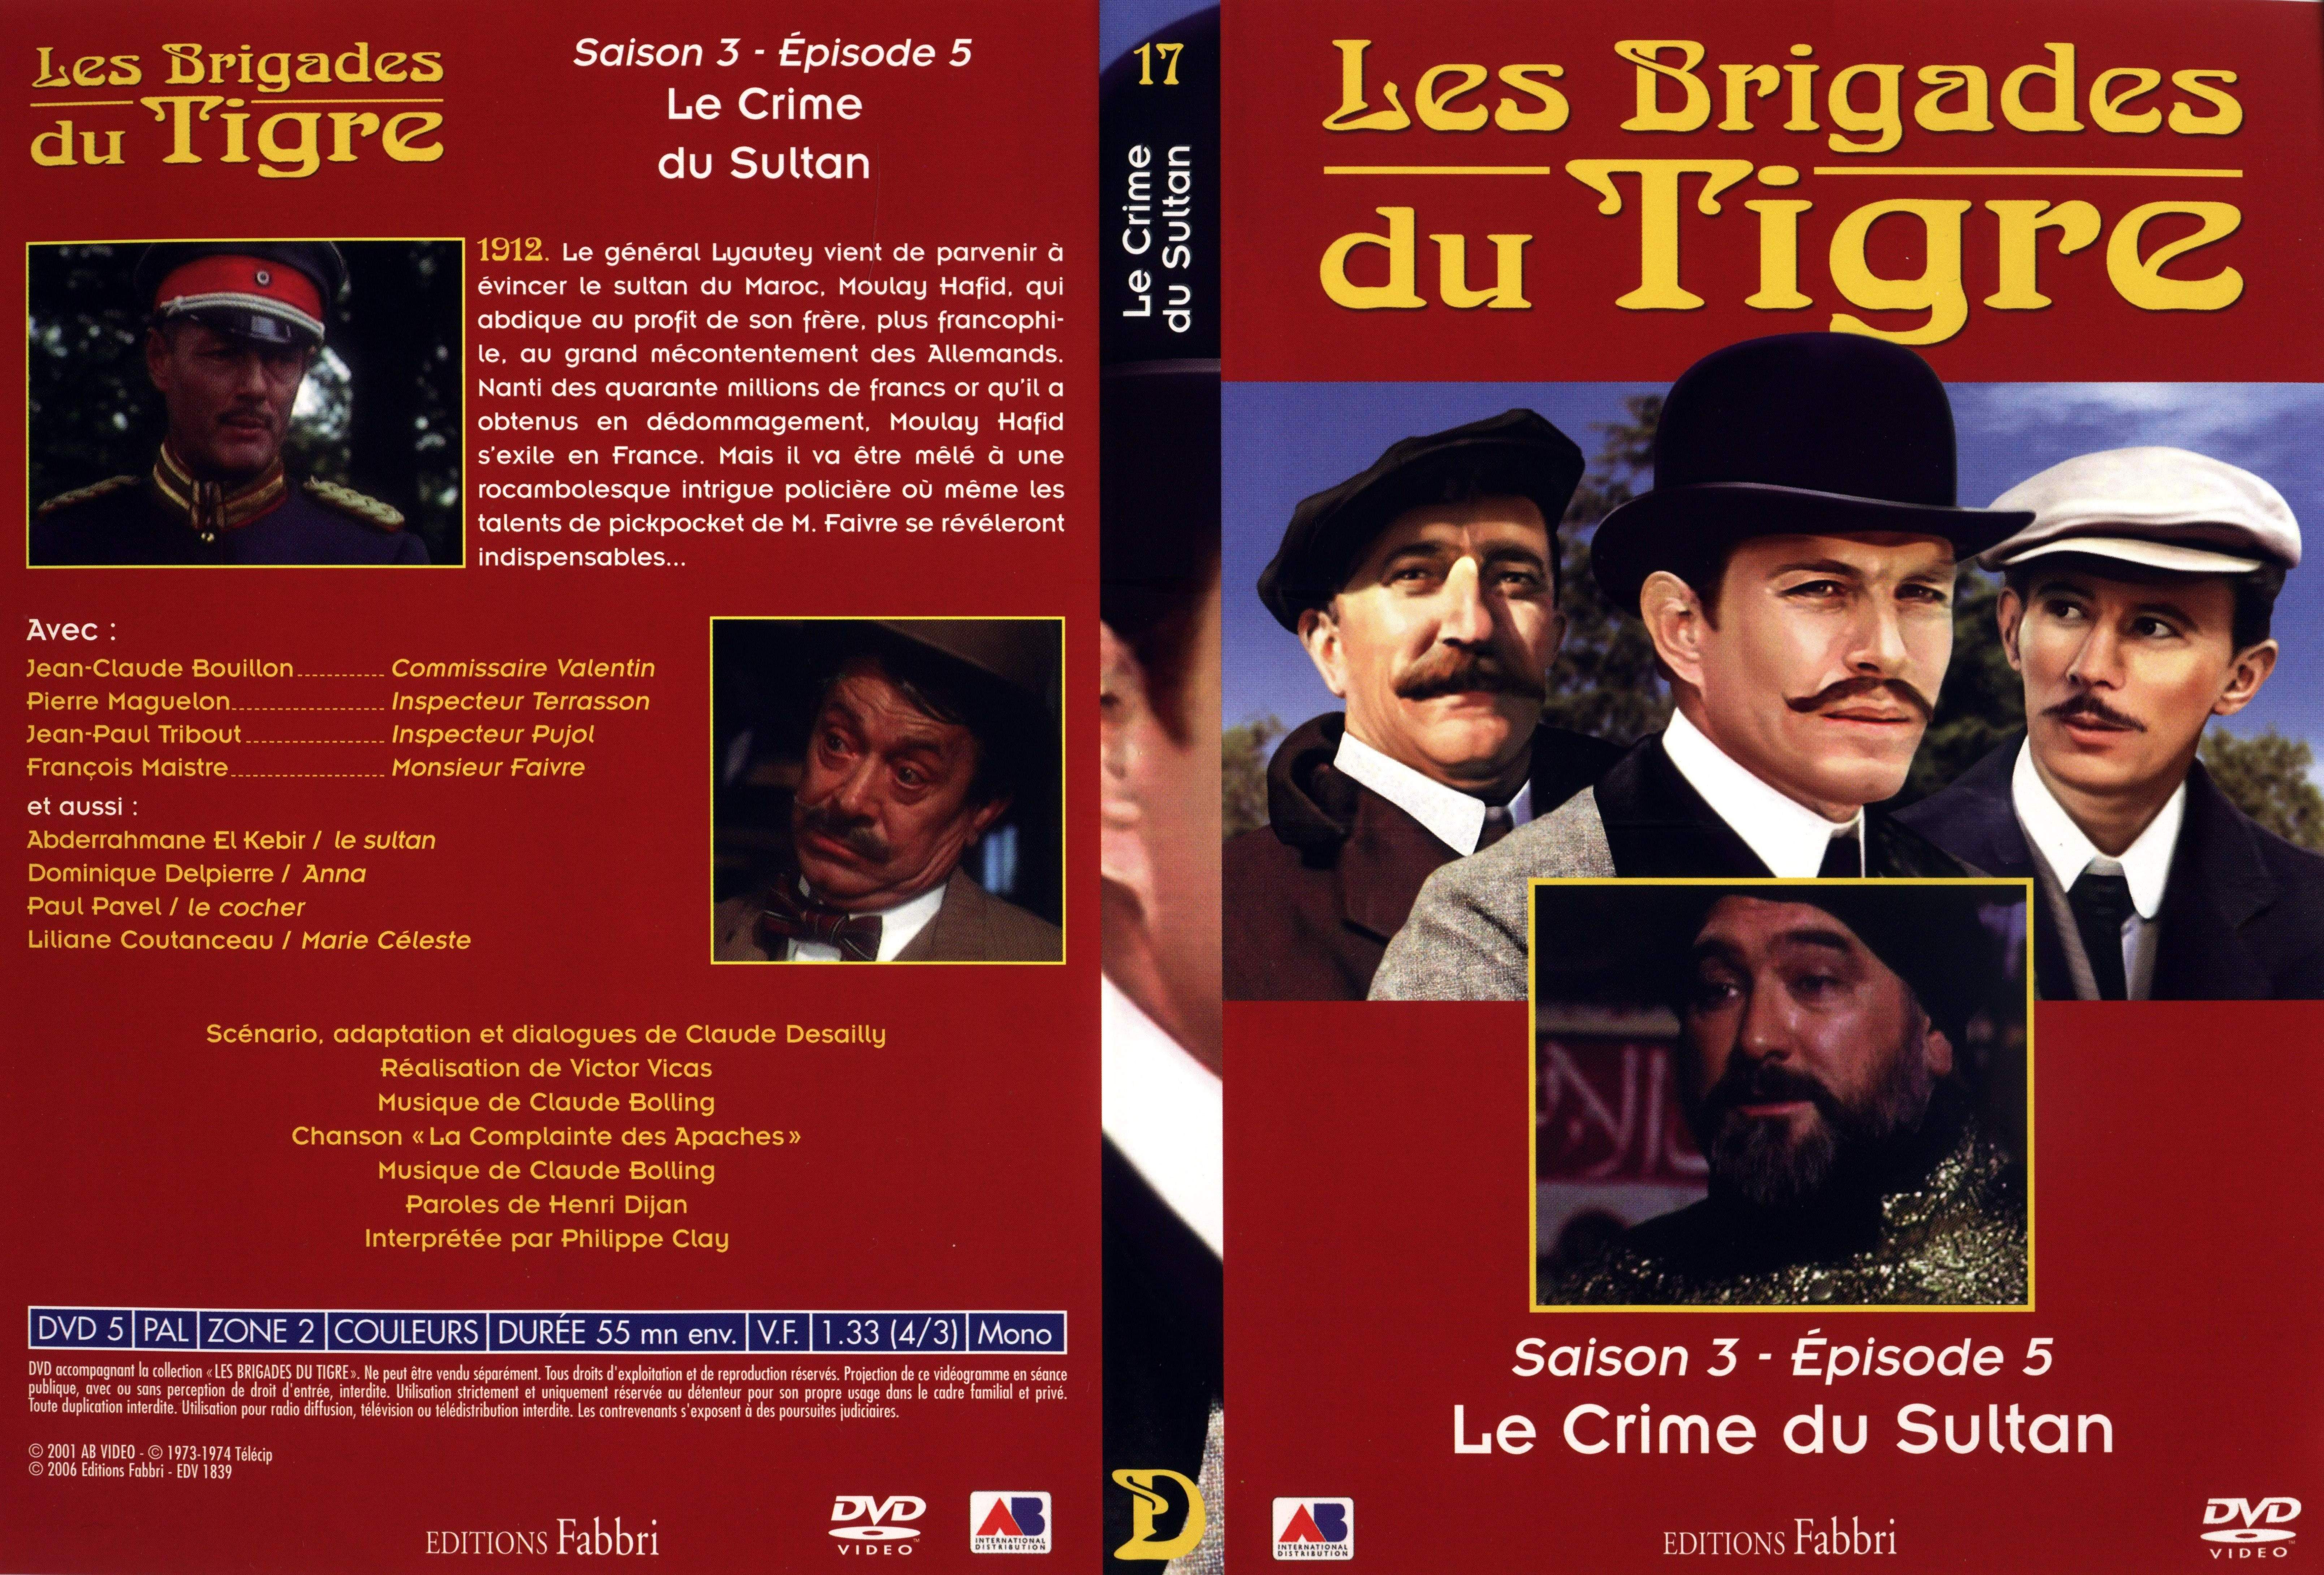 Jaquette DVD Les brigades du tigre saison 3 pisode 5